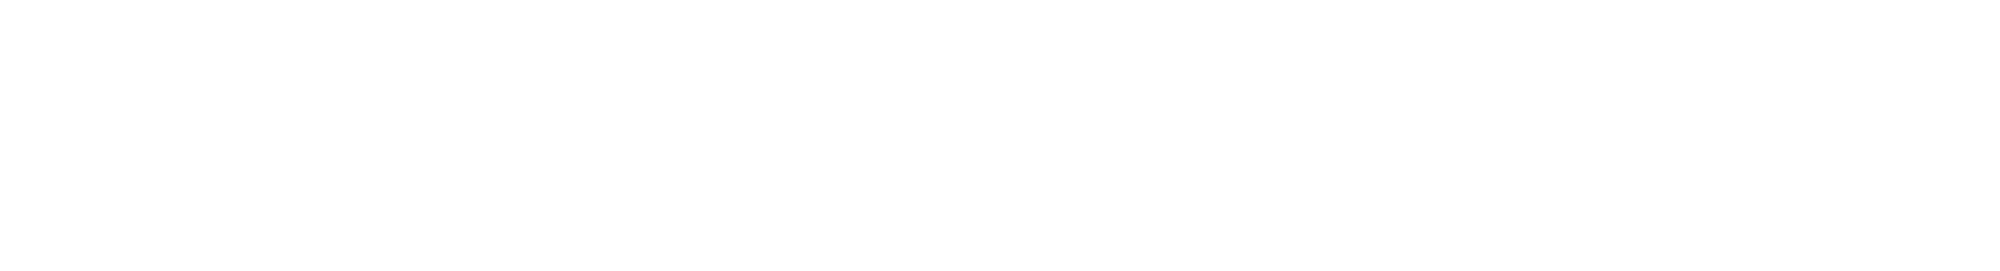 Tidal Monochrome Logo